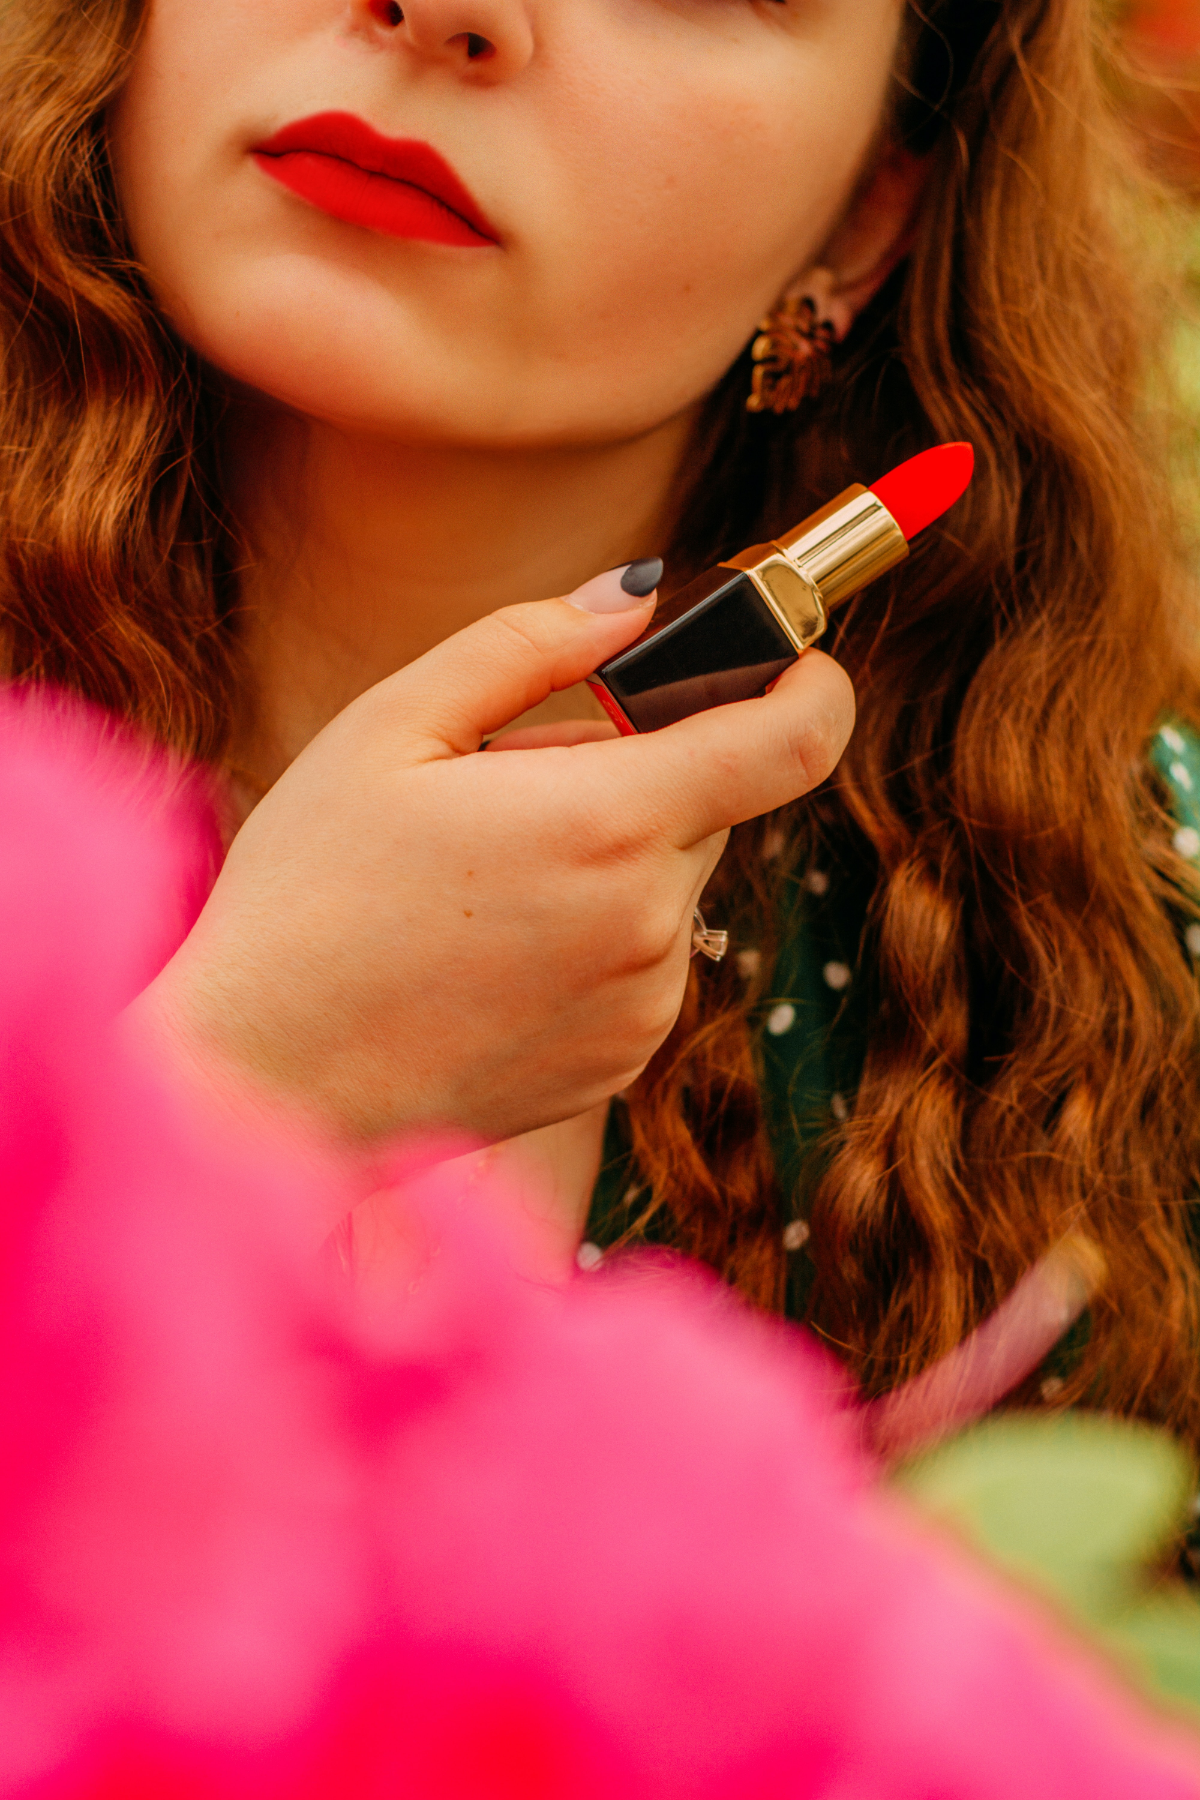 schminkflecken entfernen knallige farbe lippenstift